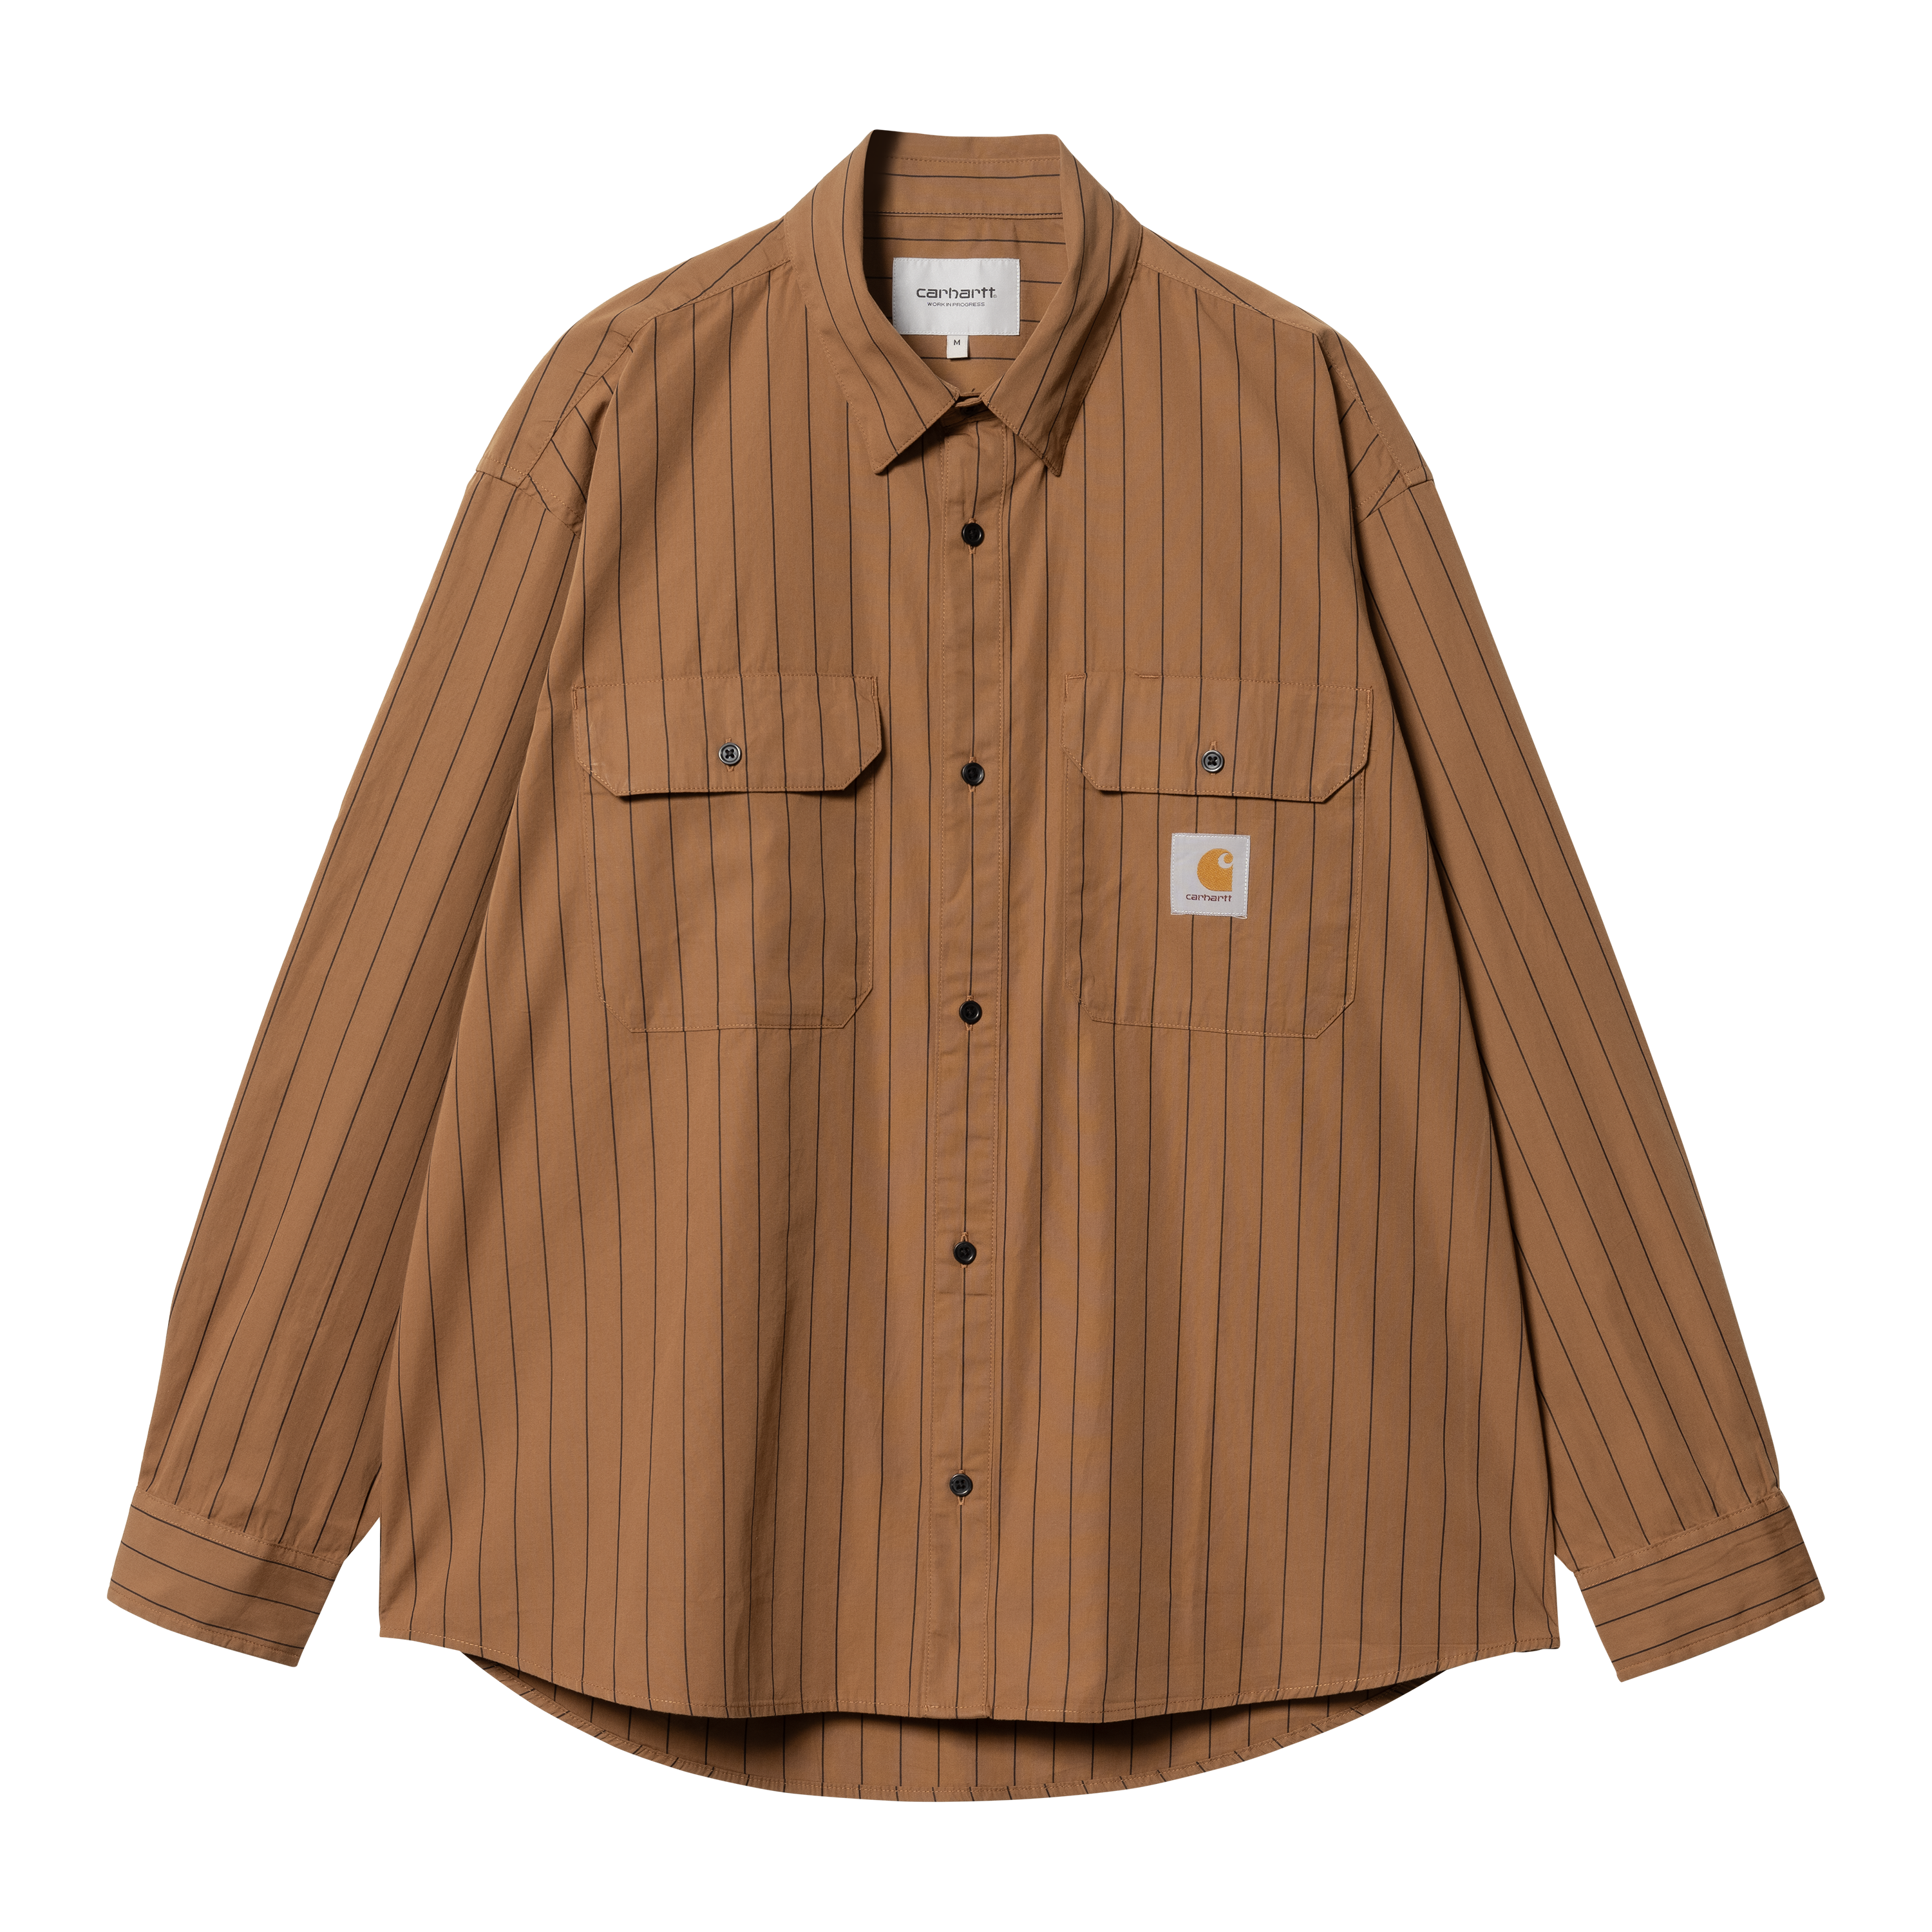 Carhartt WIP Long Sleeve Orlean Shirt in Brown